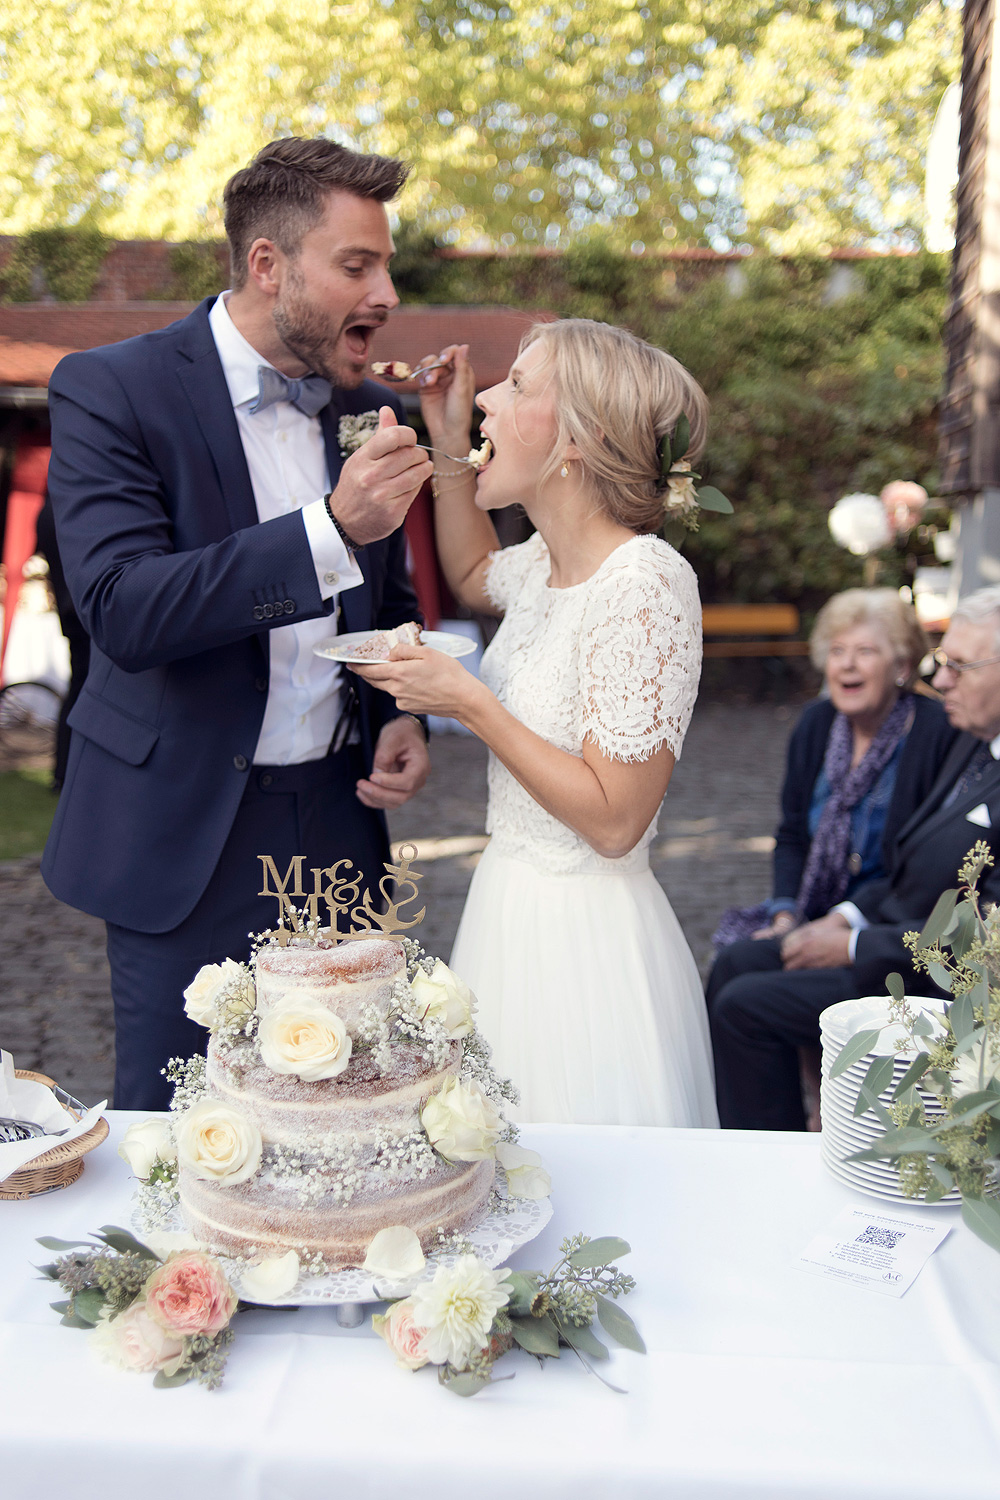 hochzeitstorte anschneiden brauch hochzeitsfotograf frankfurt heiraten freie trauung standesamt hochzeitslocation